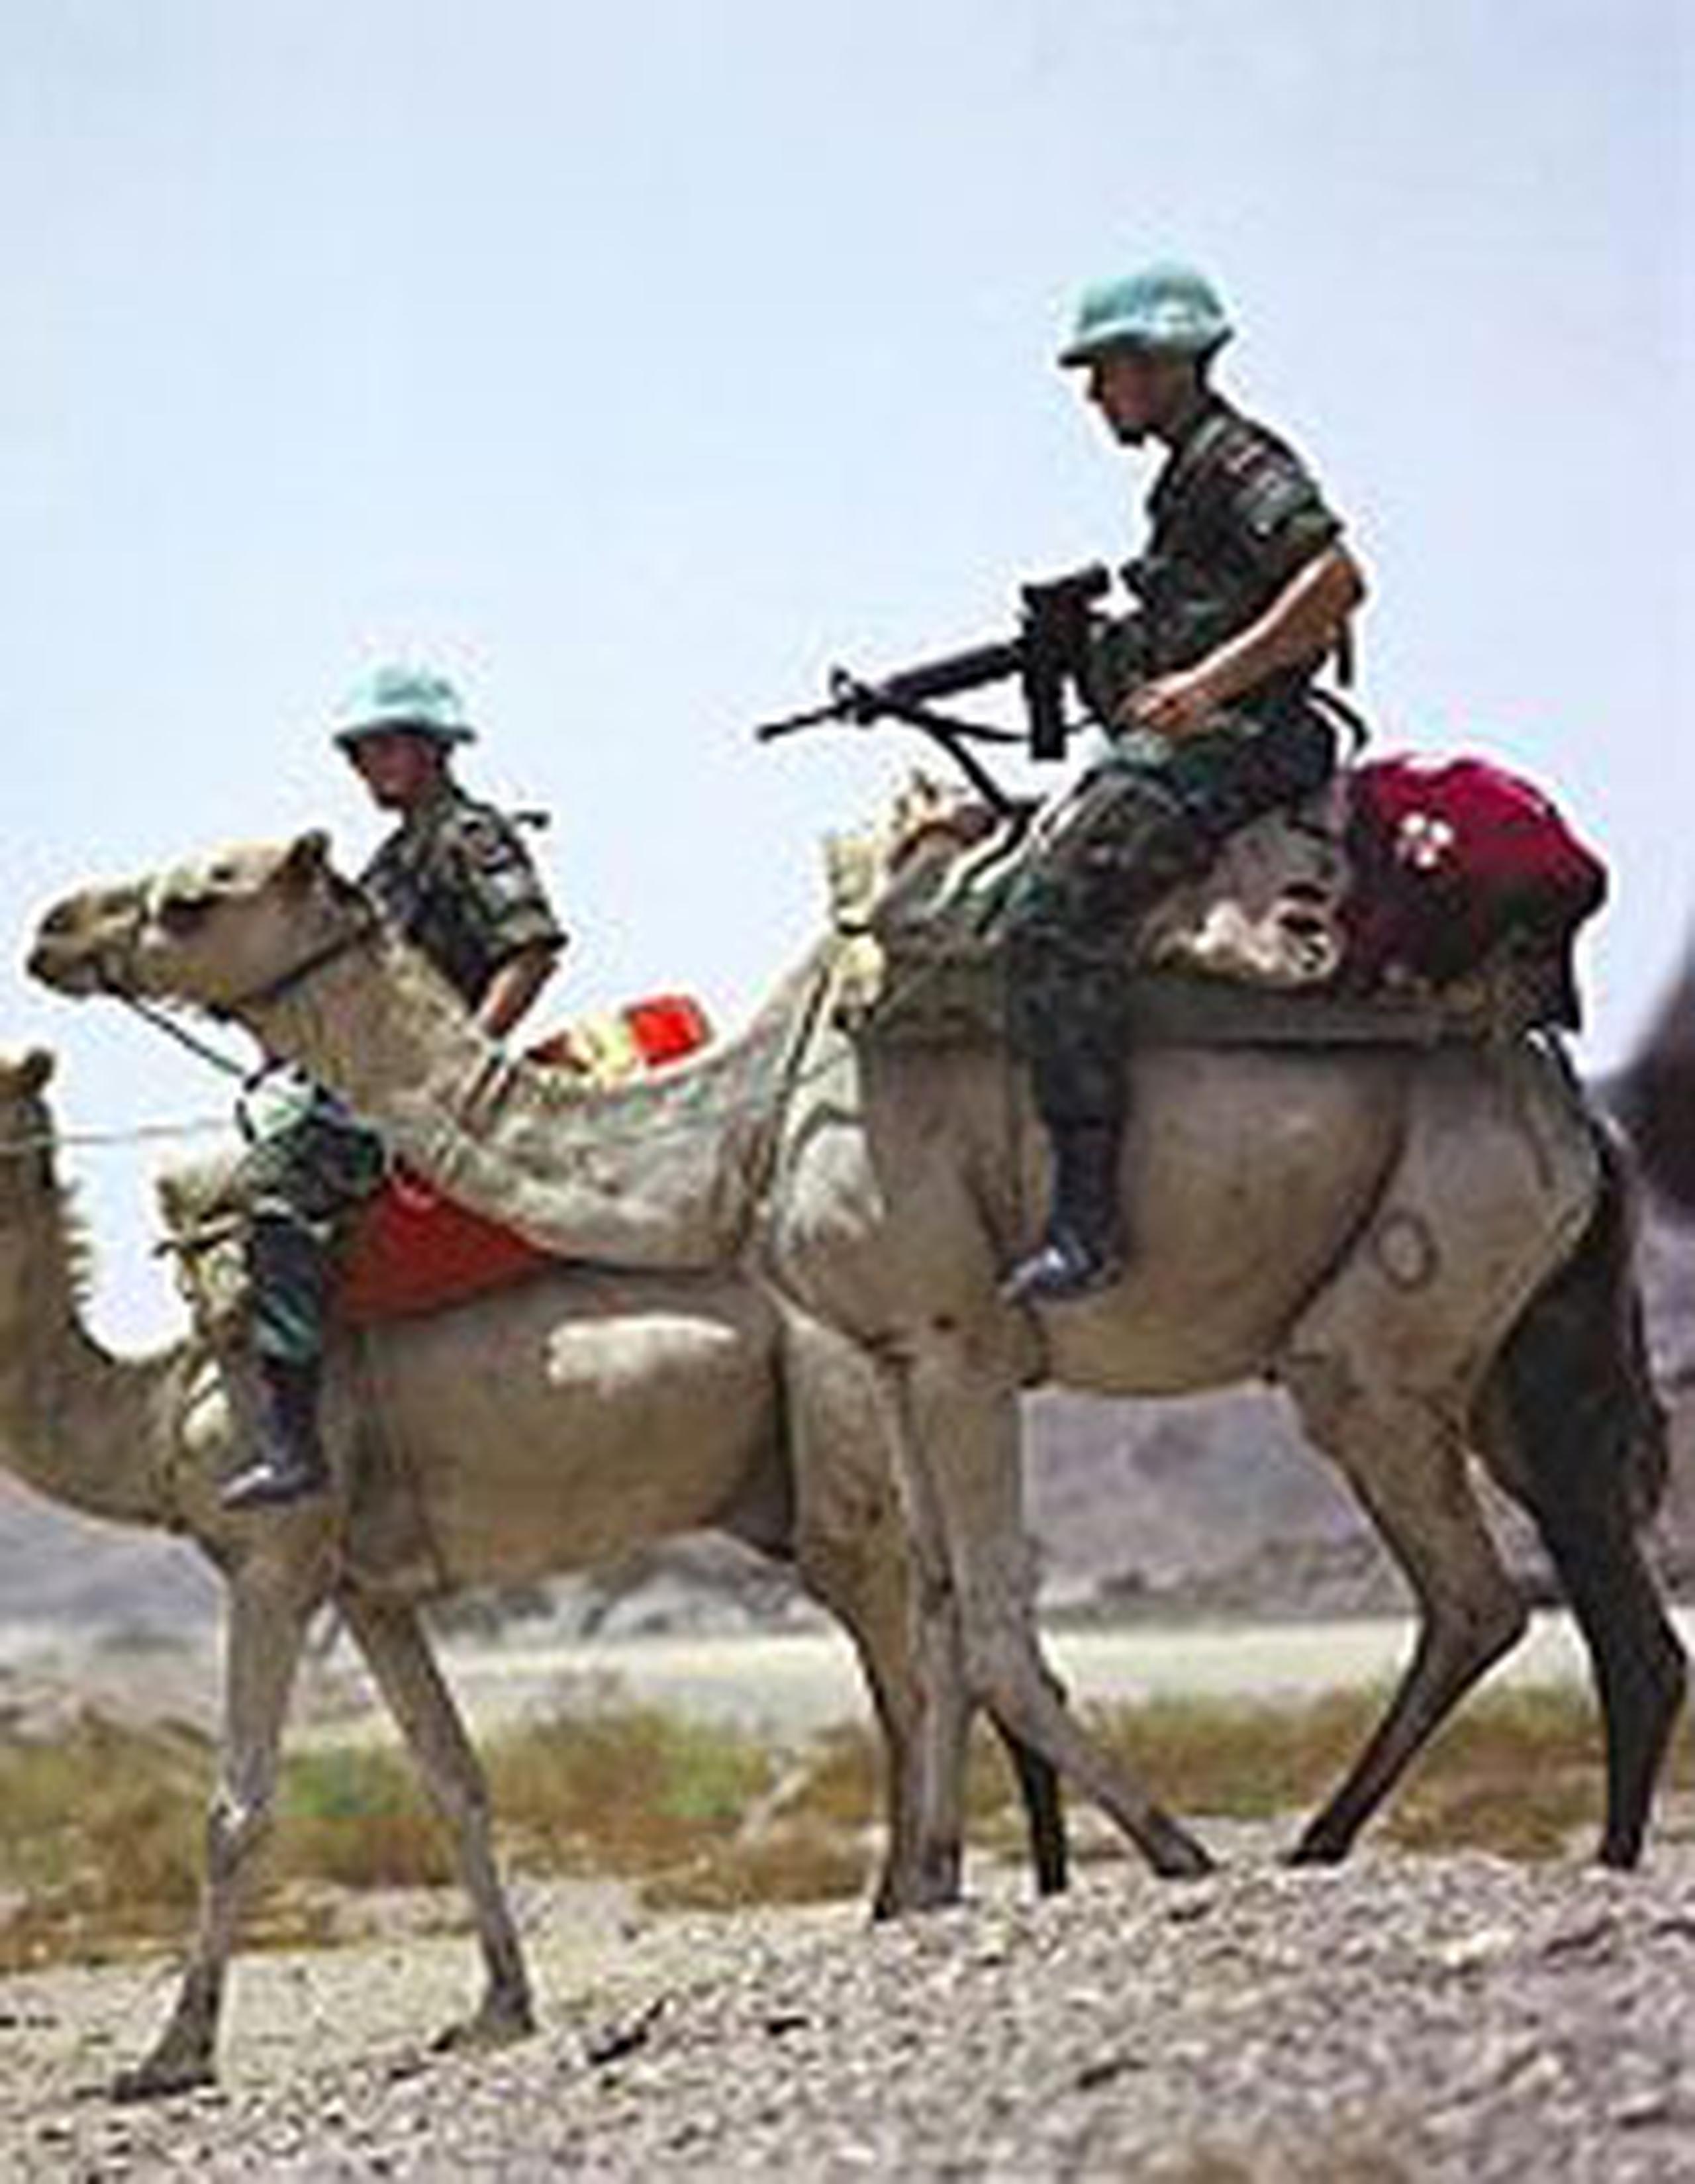 Las Fuerzas de Paz de la ONU, conocidas como los cascos azules, son cuerpos militares encargados de crear y mantener la paz en áreas de conflictos. (Google)